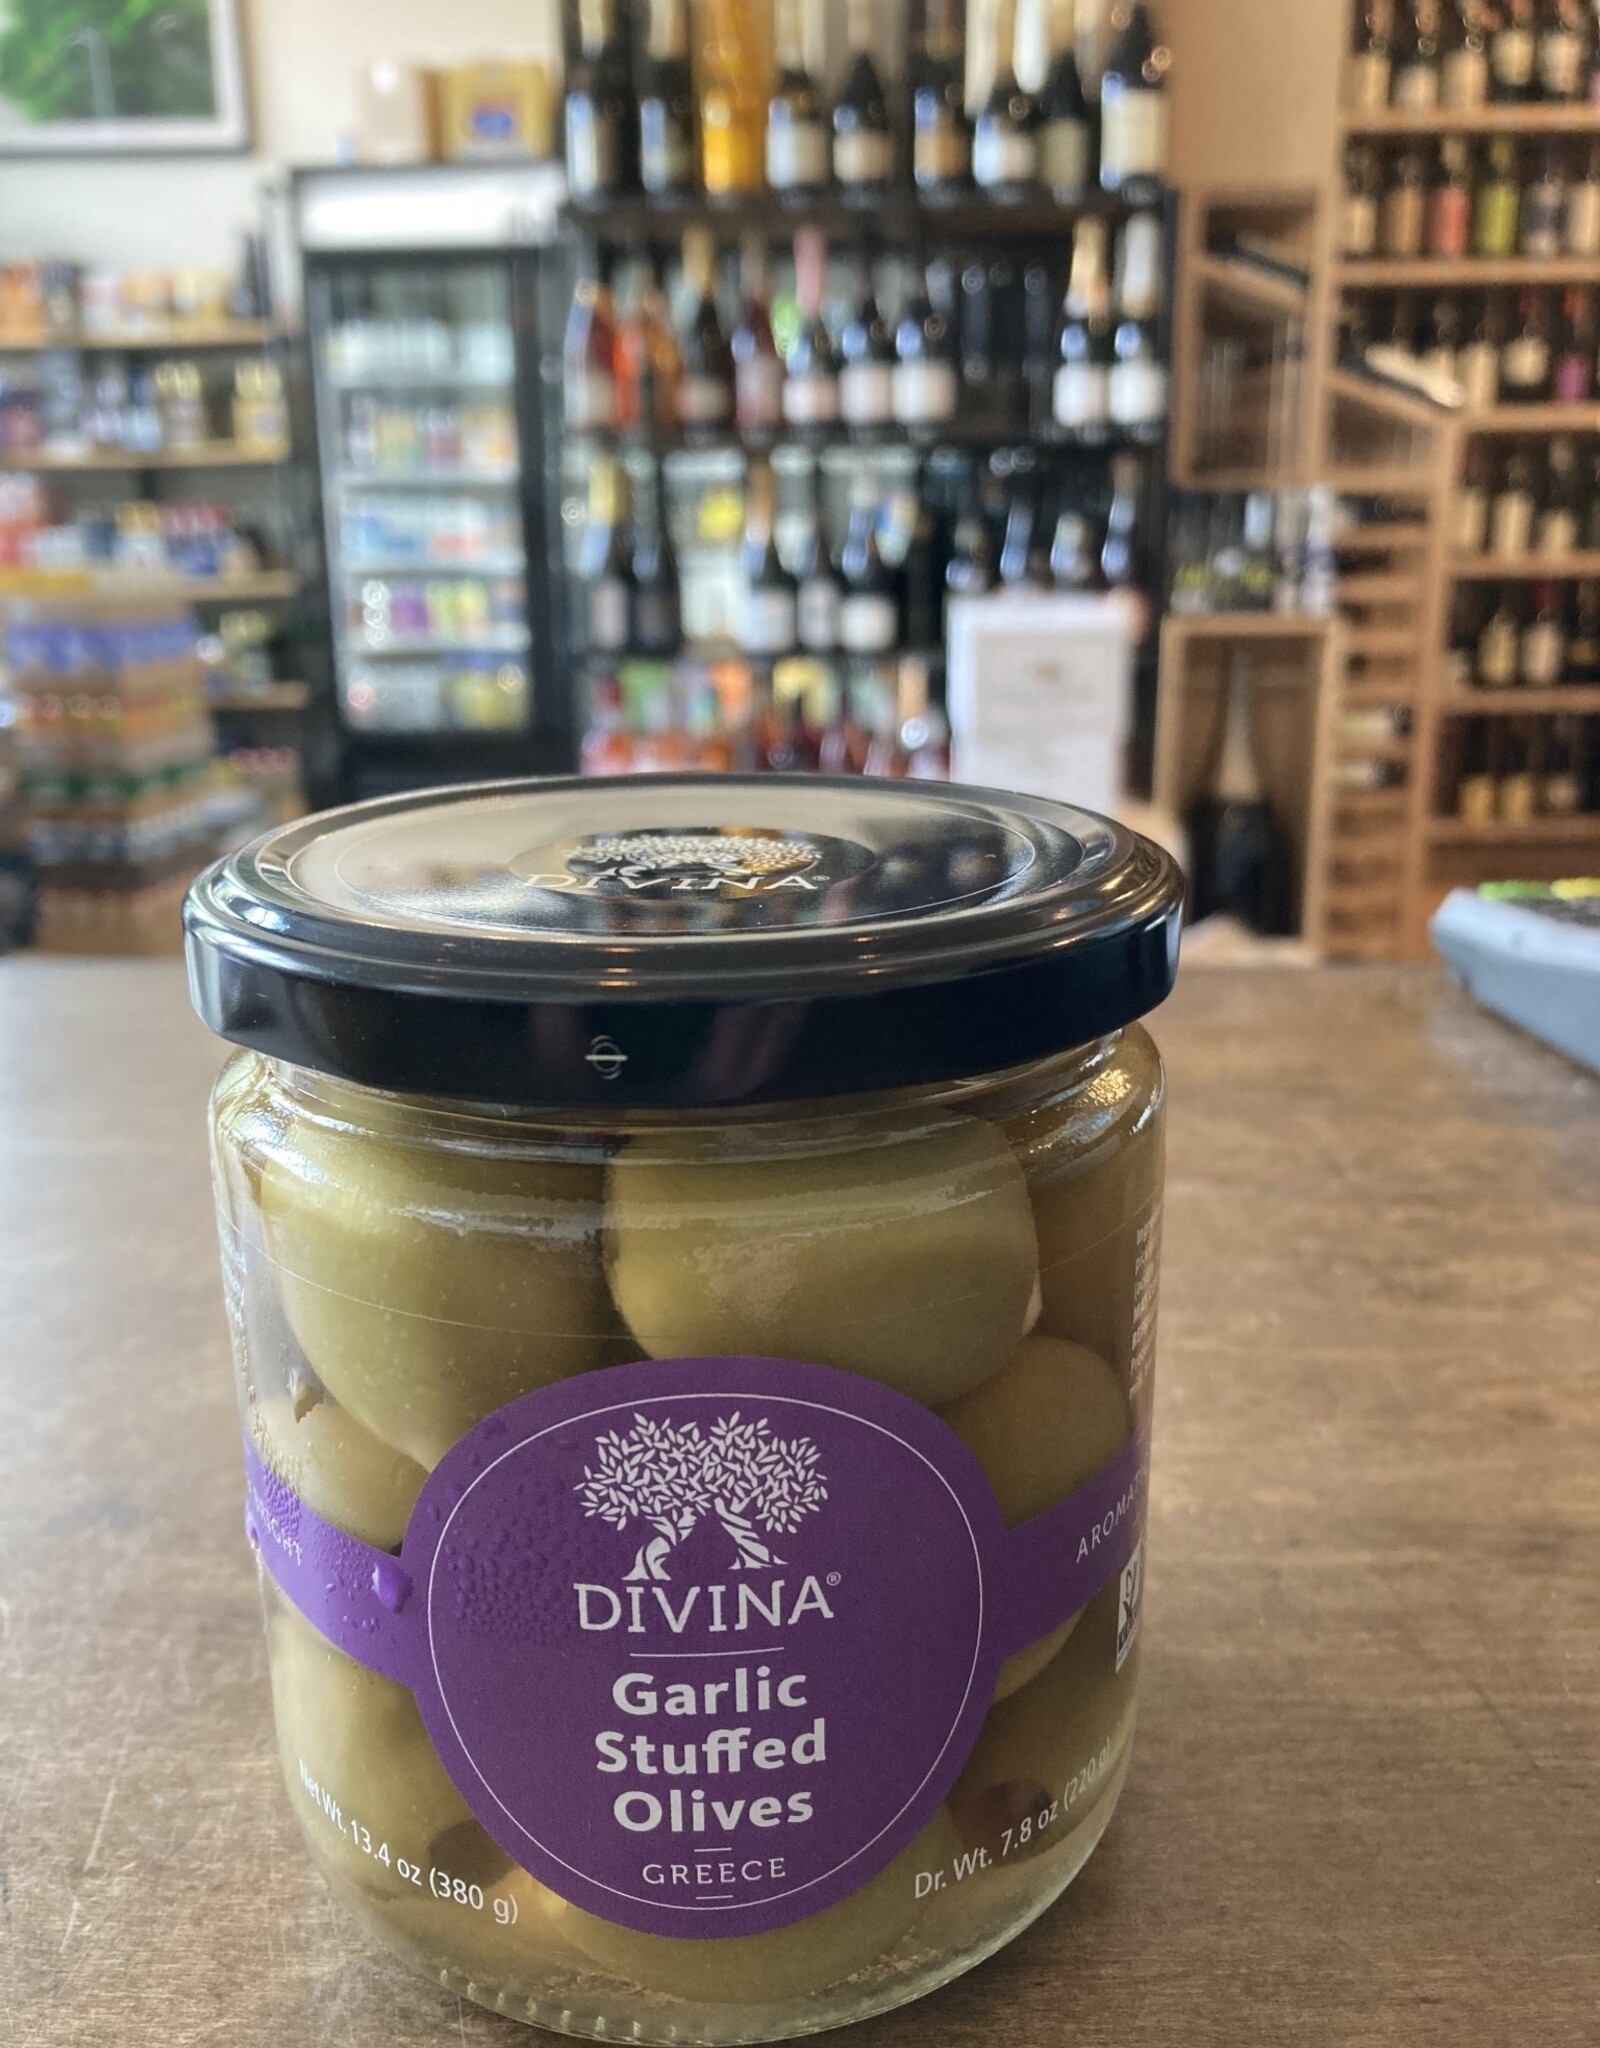 Divina Divina Garlic Stuffed Olives